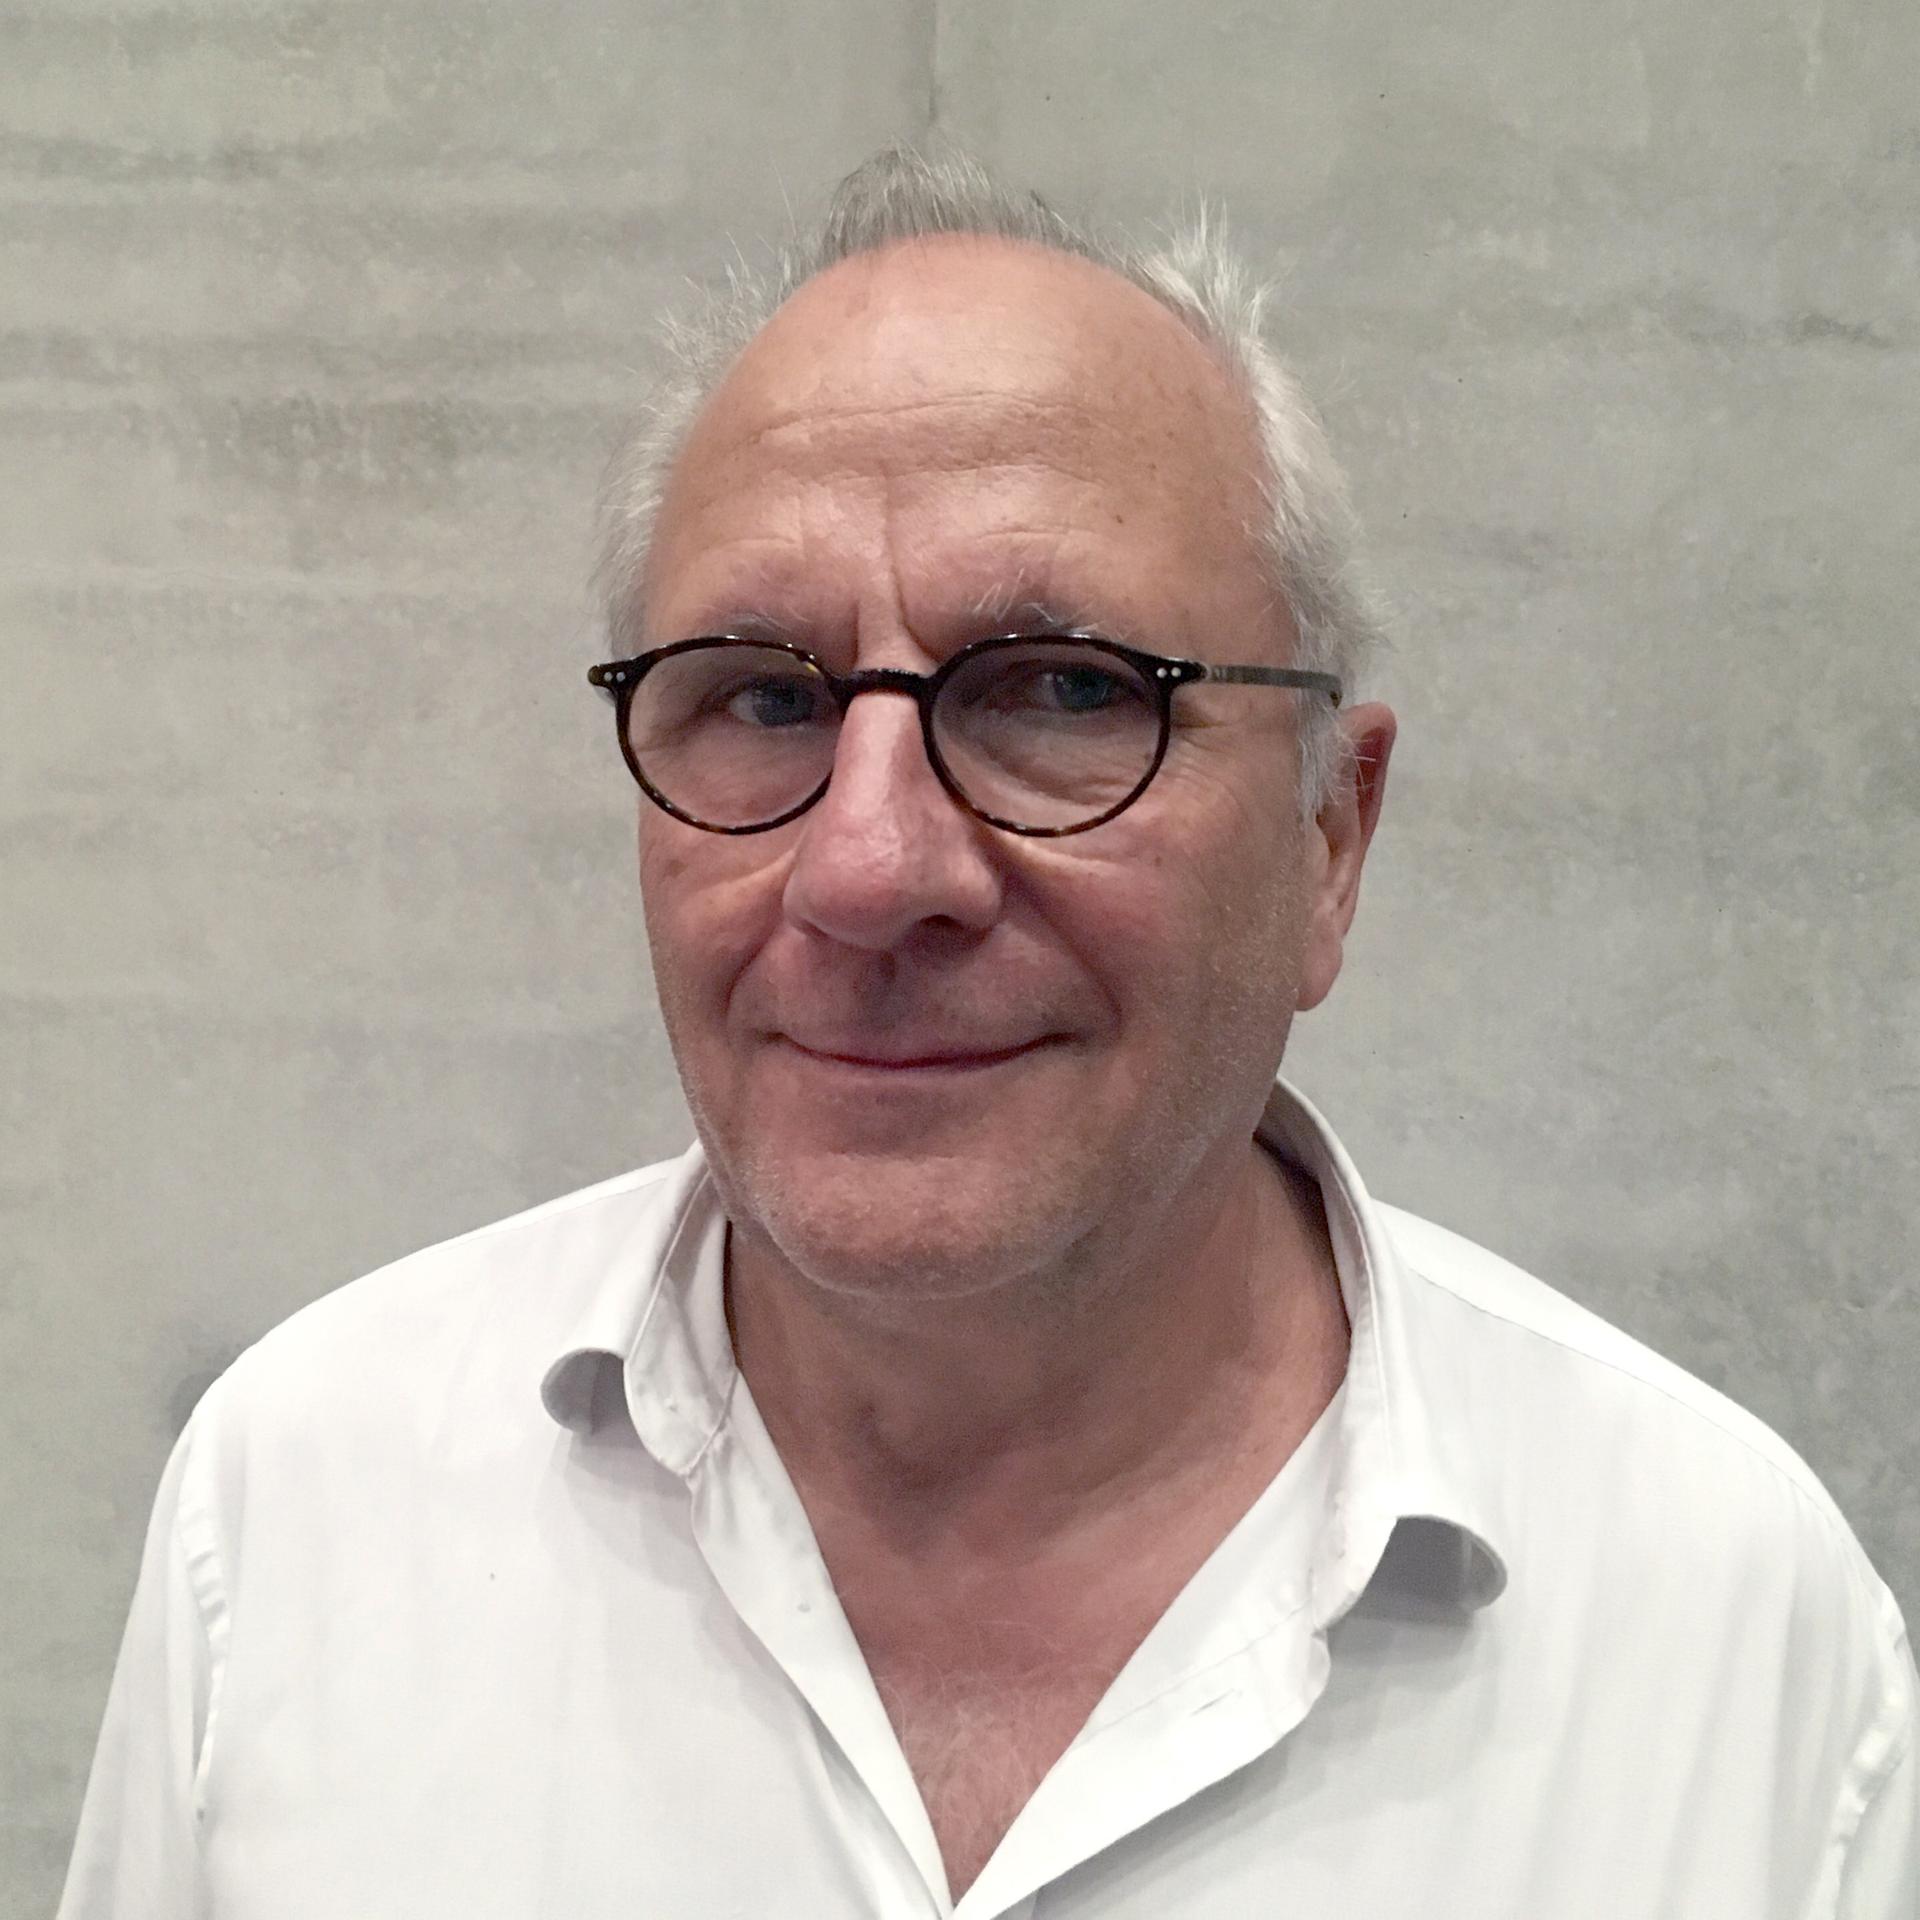 Nach 22 Jahren als Direktor – Ulrich Schreiber verlässt das Literaturfestival Berlin